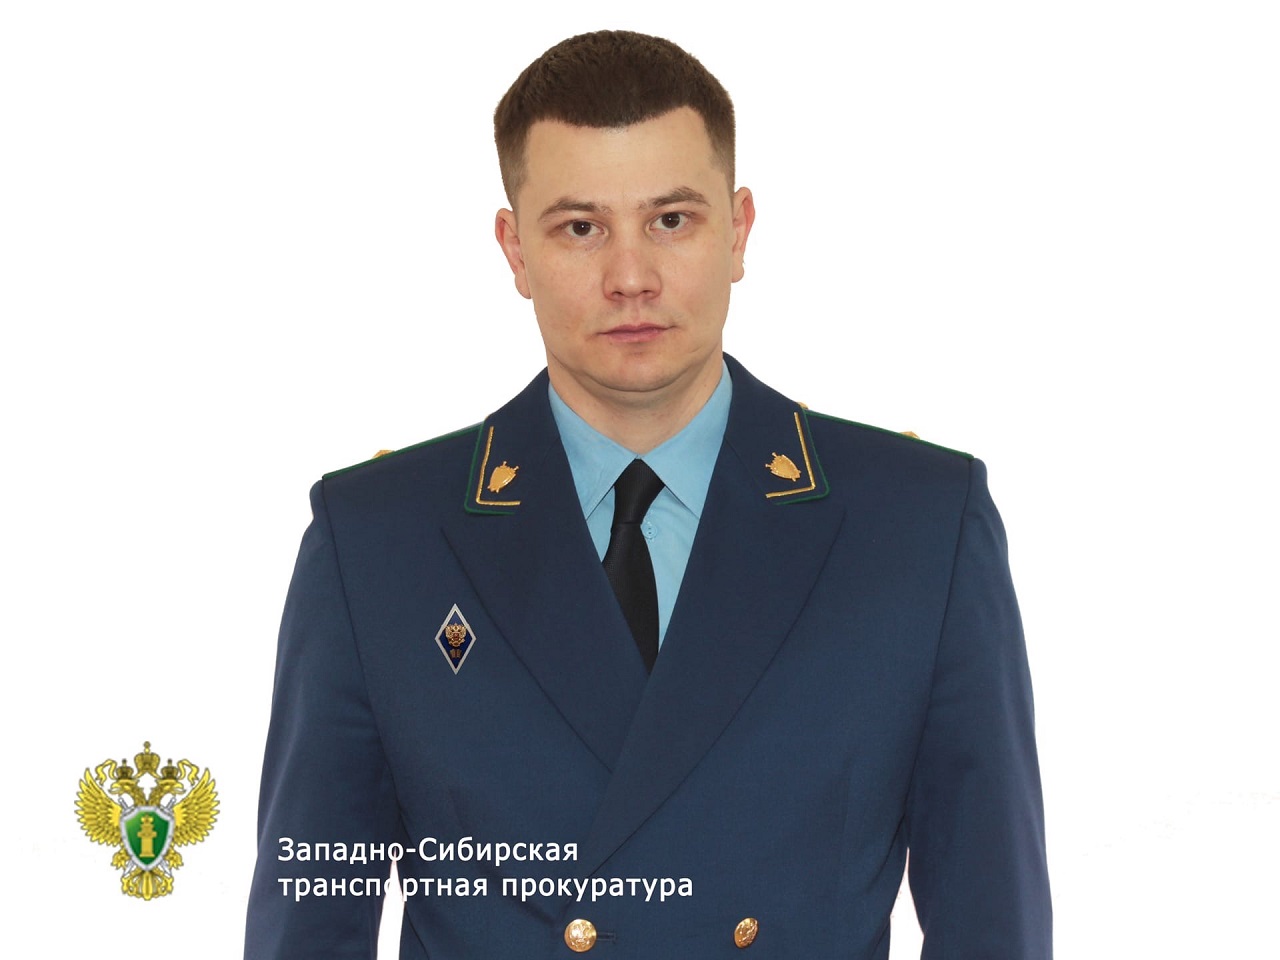 Транспортный прокурор Александр Тодинов